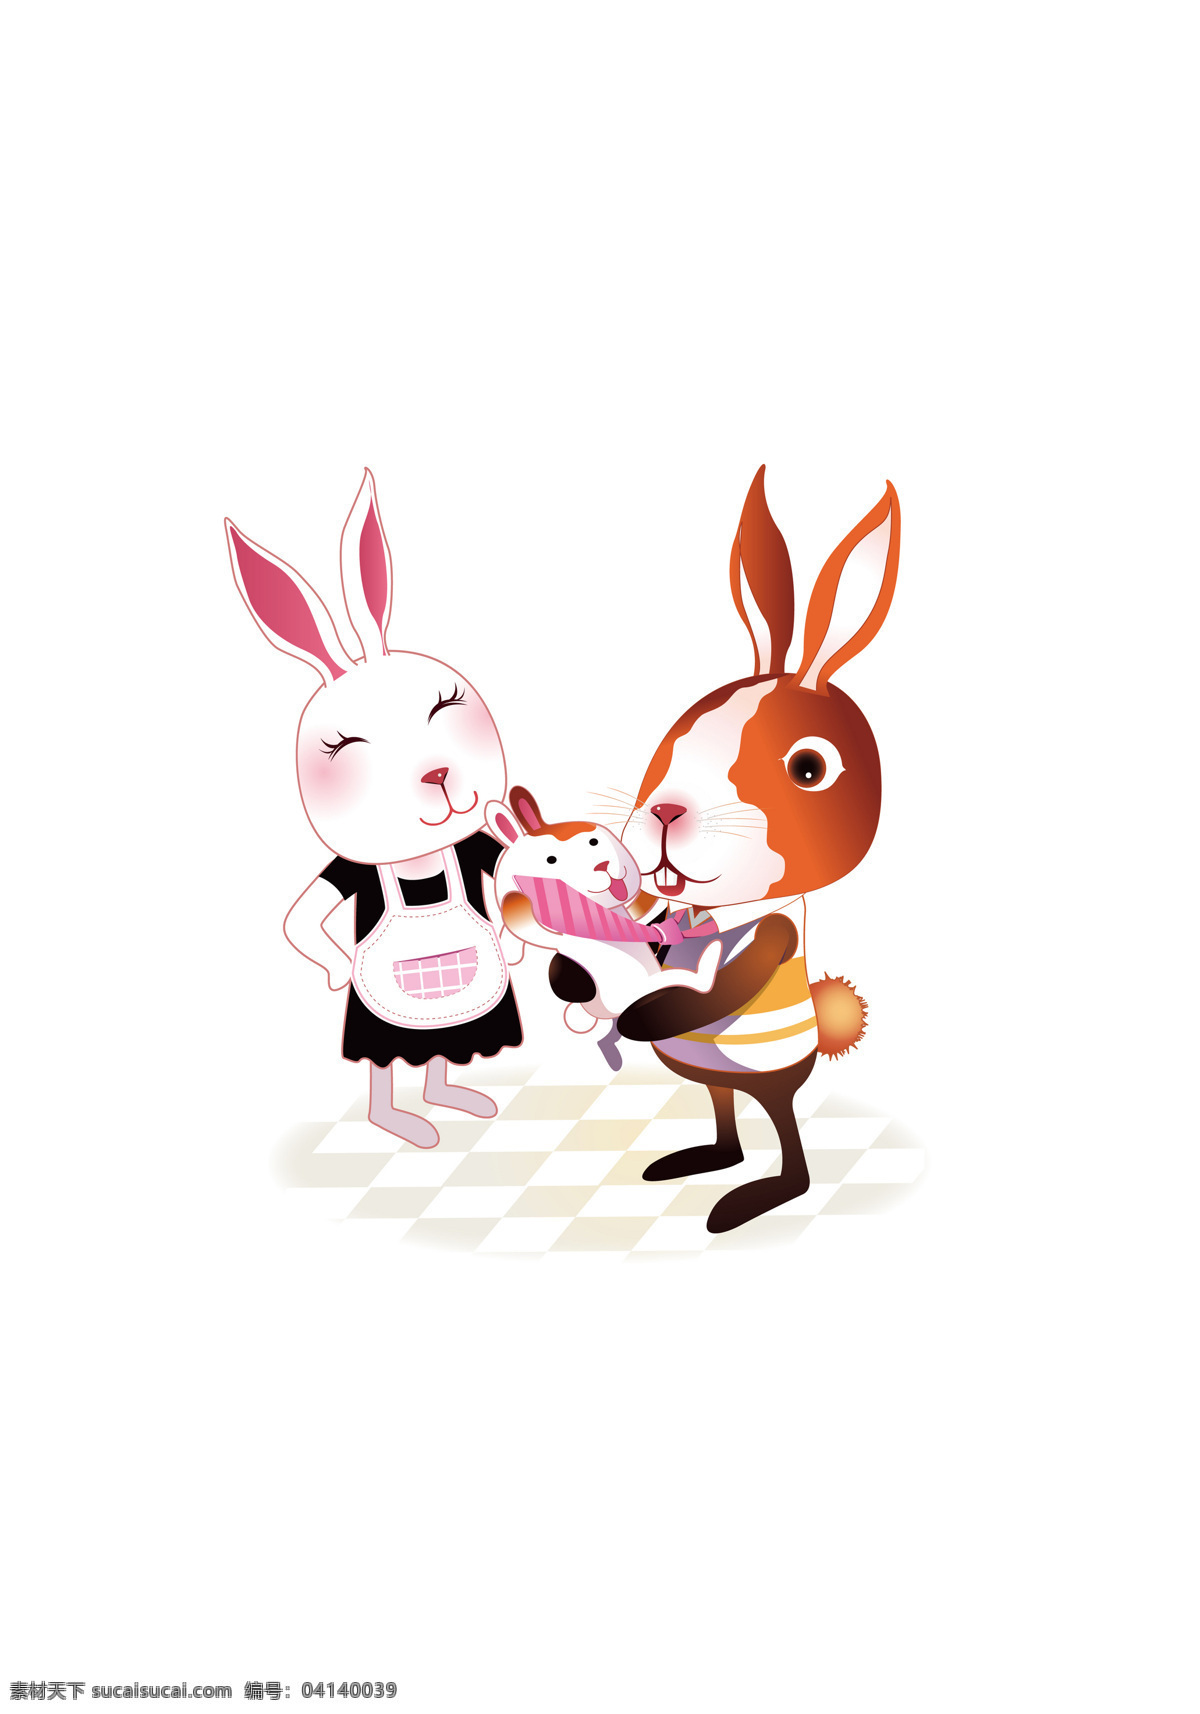 宝宝 插画 动漫动画 家庭 卡通 卡通兔 可爱 漫画 兔 设计素材 模板下载 兔子 兔年 生肖 一家人 插画集